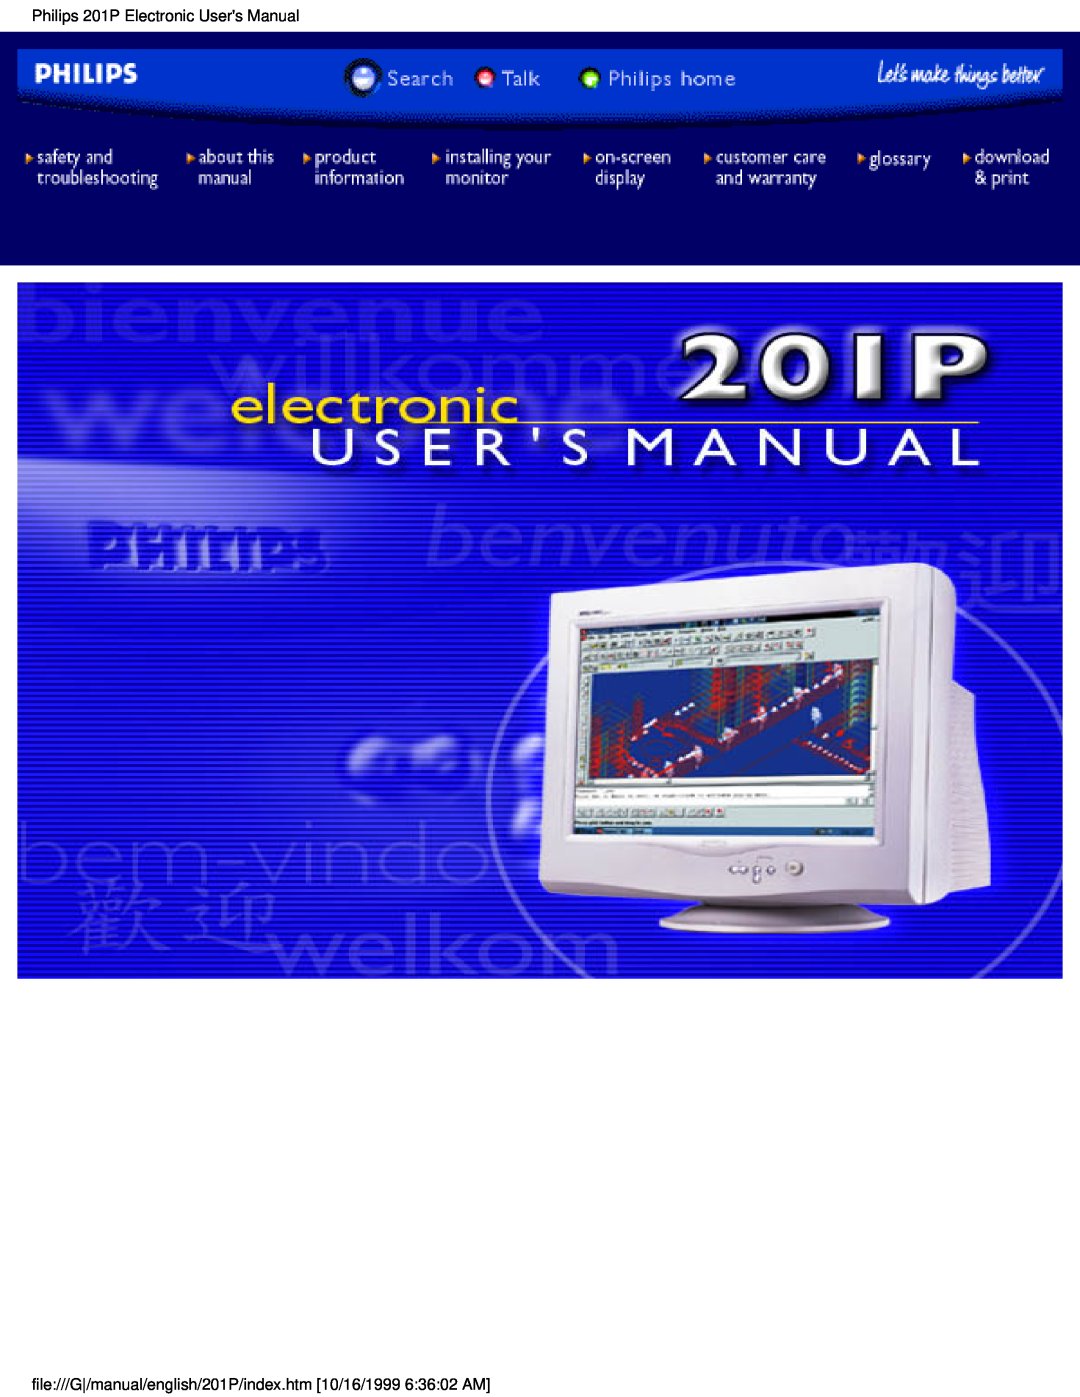 Philips 201P user manual 